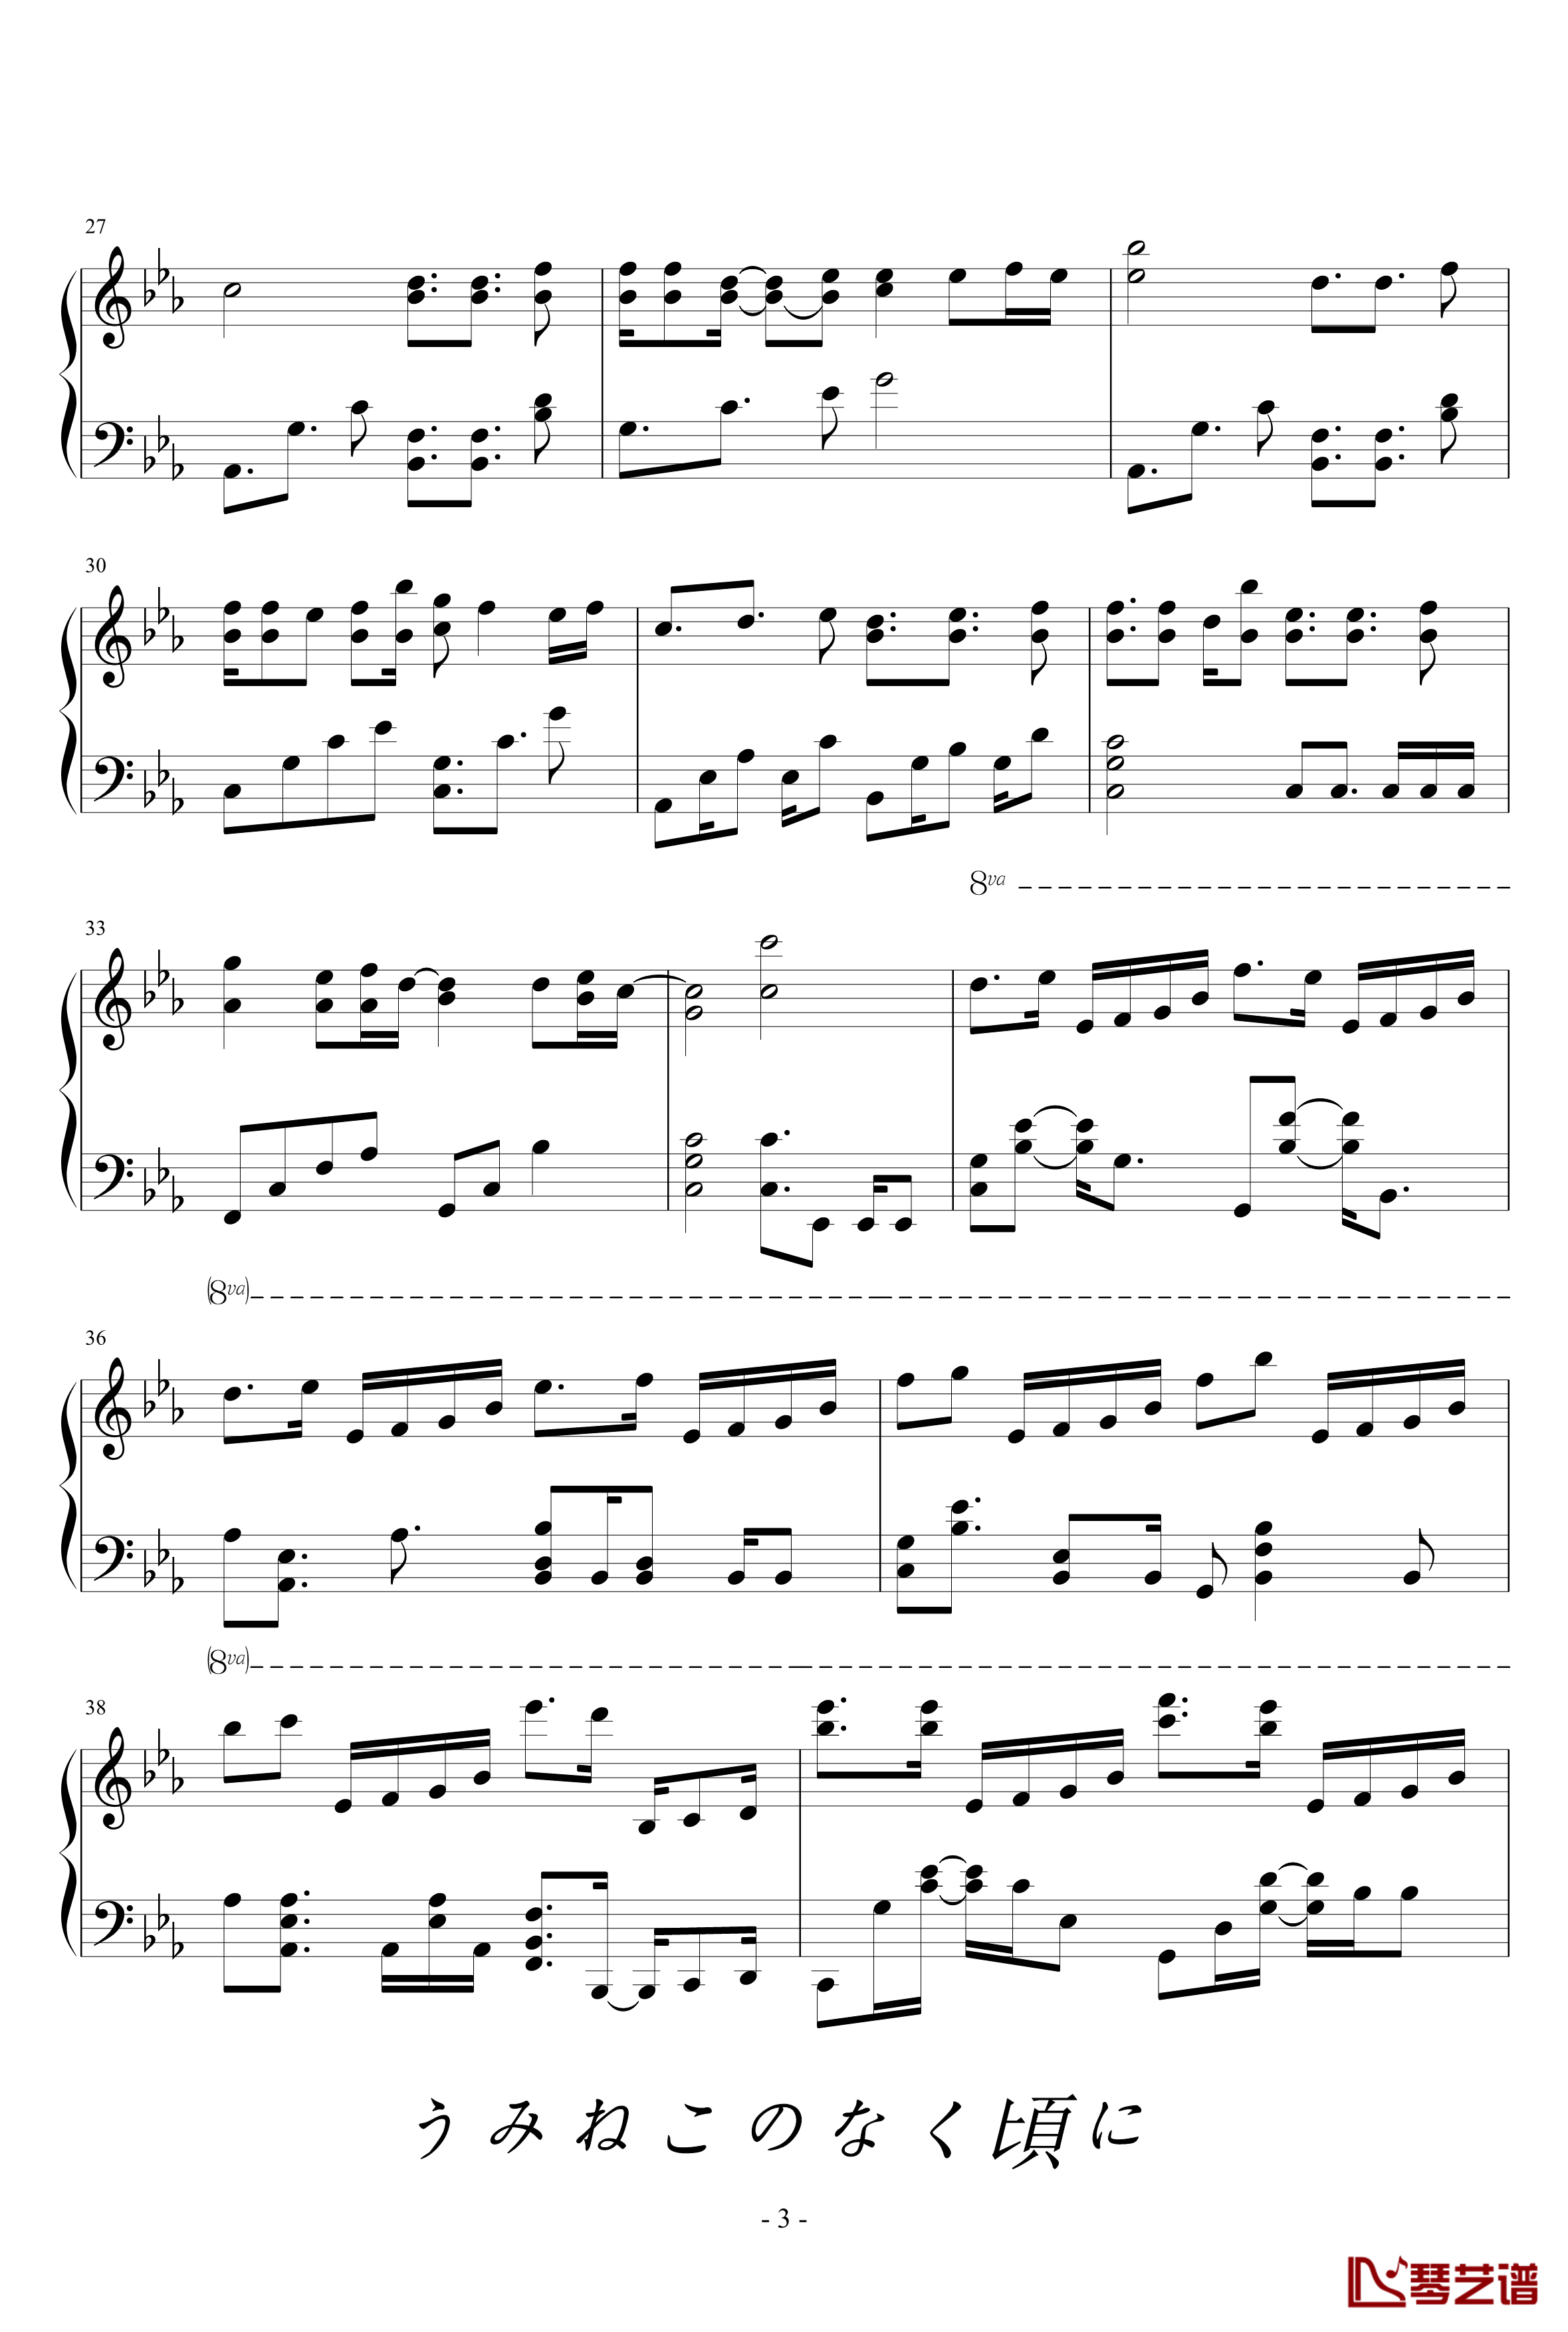 海猫BGM钢琴谱-Answer-海猫鸣泣之时3